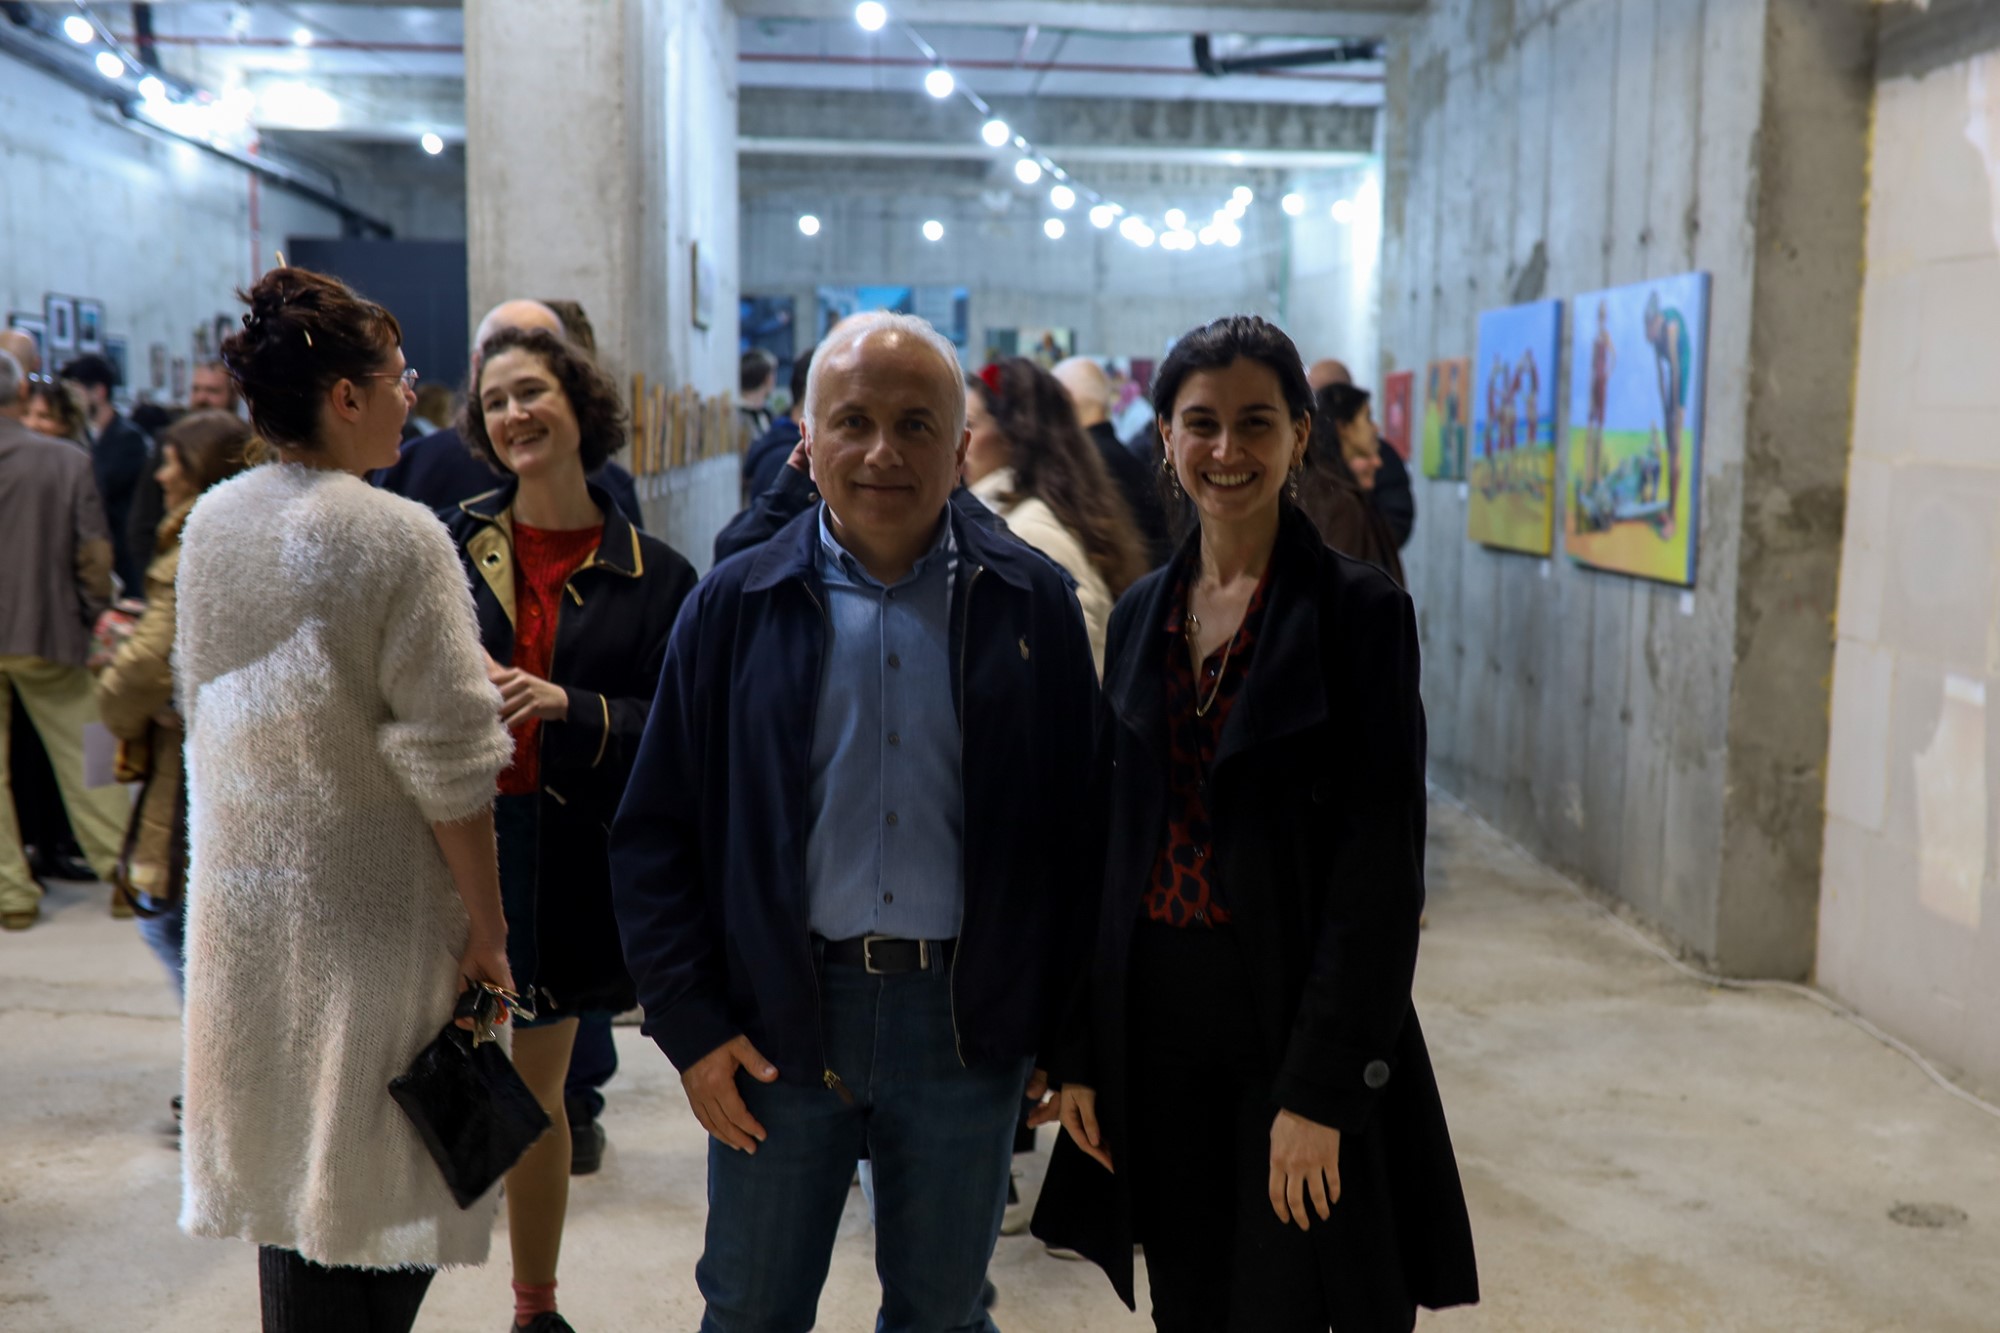 נפתחה תערוכת האמנות "פגישה עיוורת" במתחם "הרובע" בחיפה